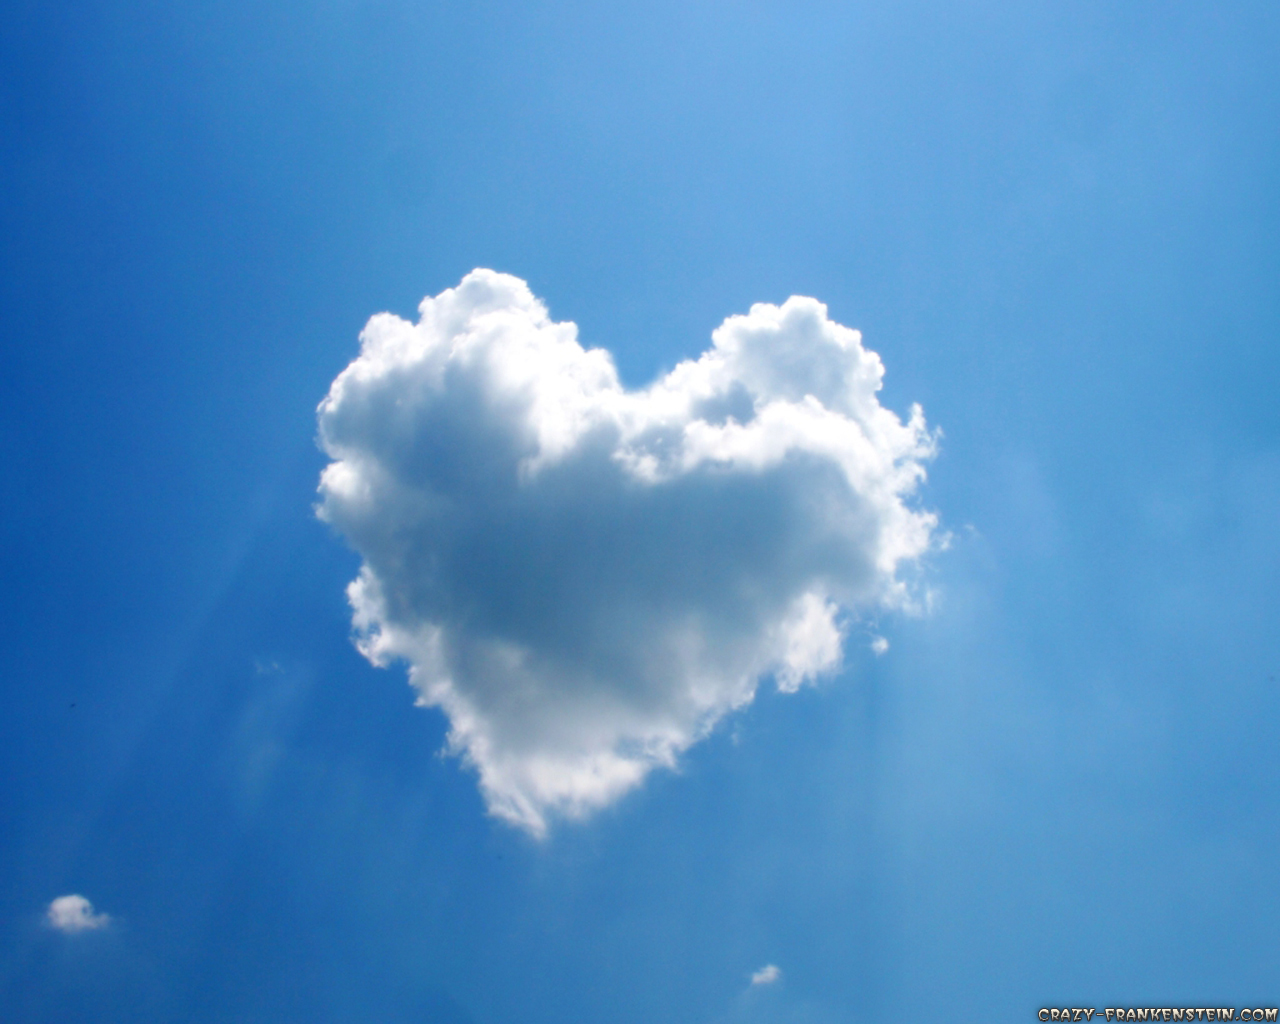 Cloud In A Heart Shape - HD Wallpaper 